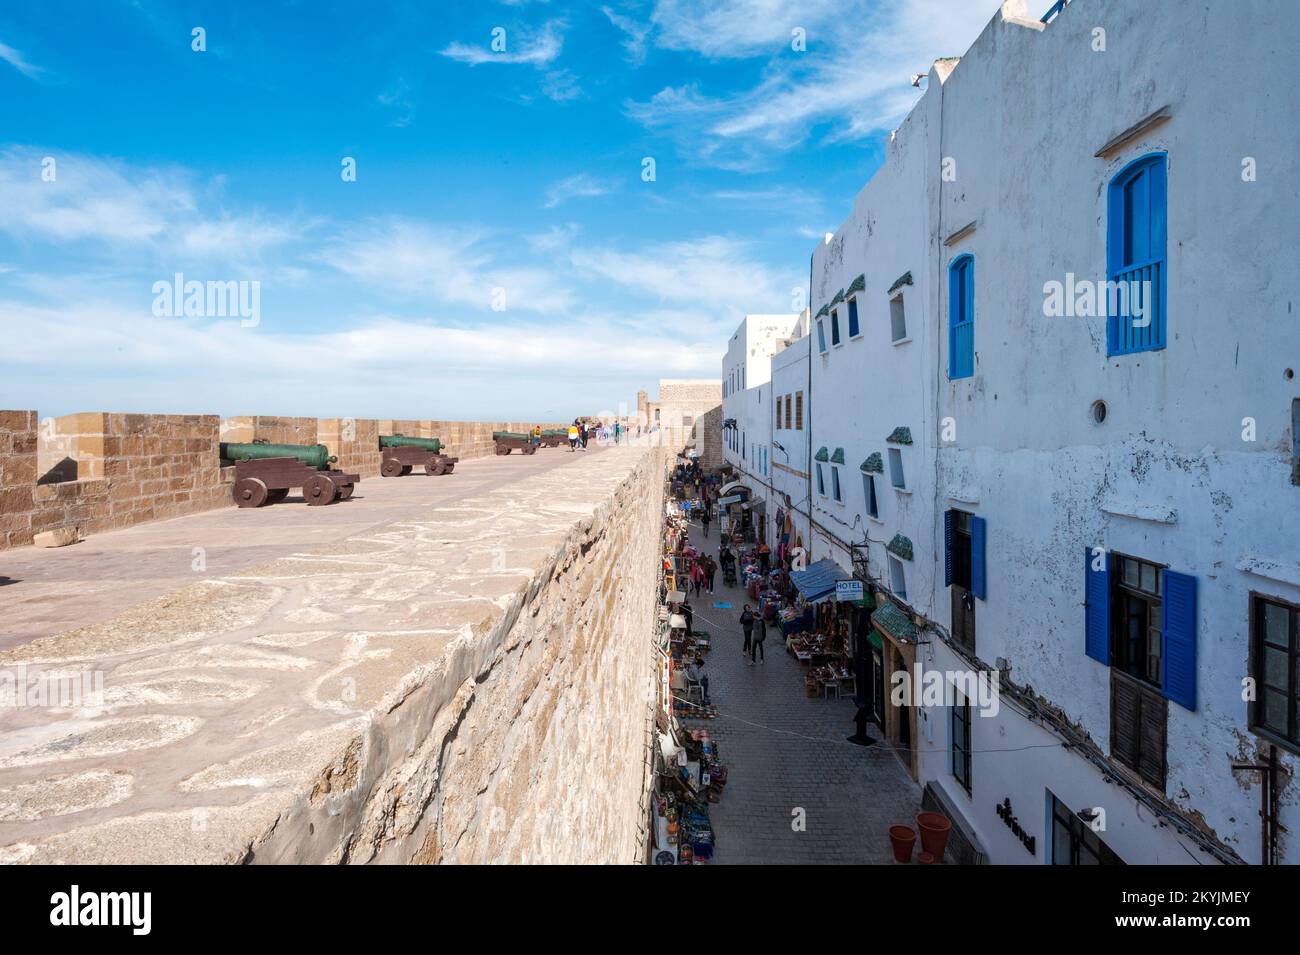 Remparts de la ville et marché artisanal - Essaouira, Maroc Banque D'Images